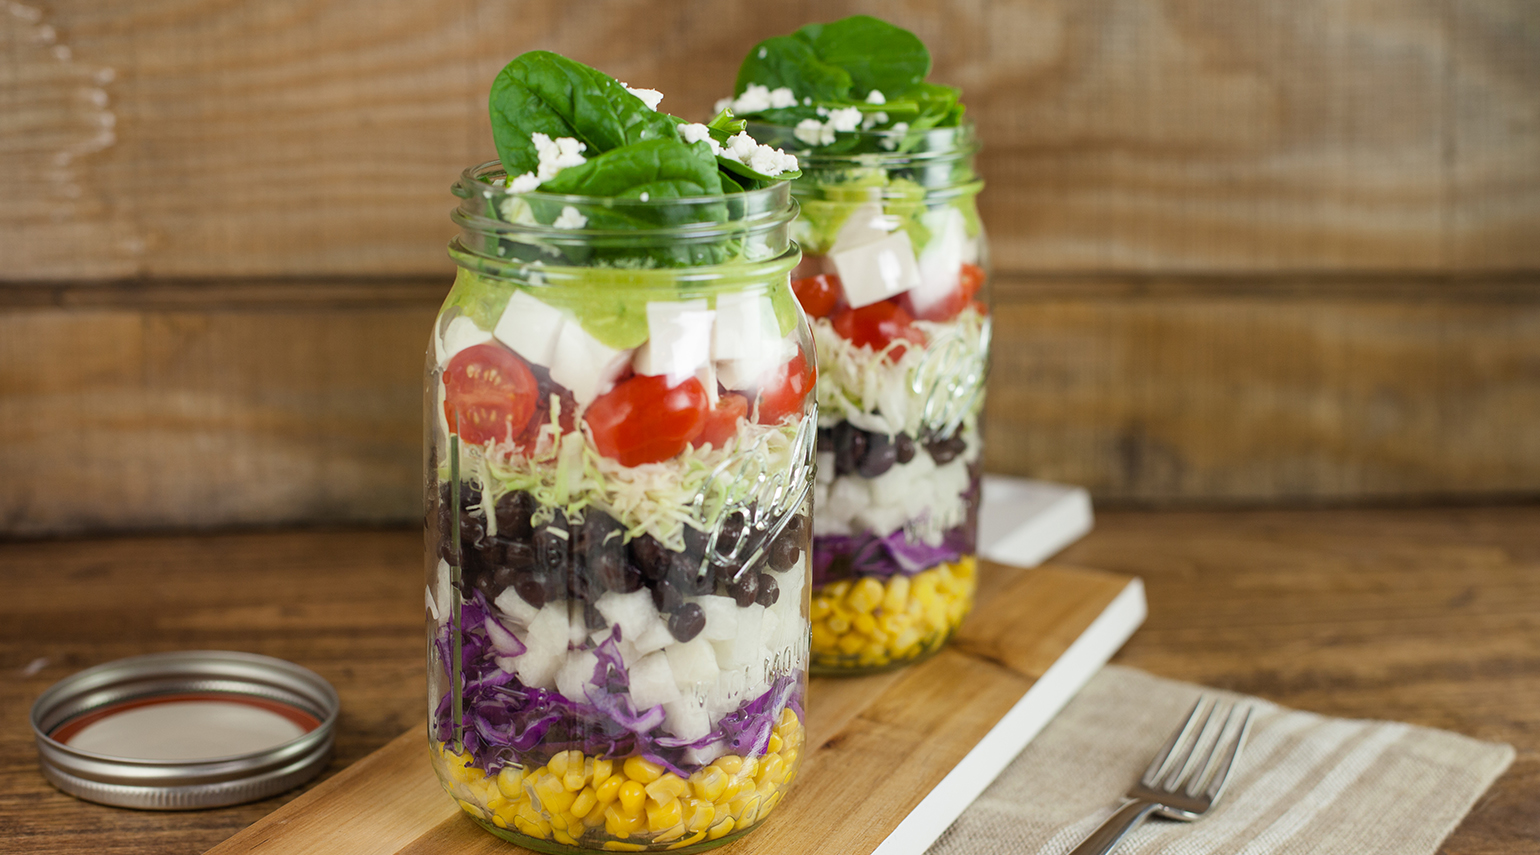 Taco Salad in a Jar